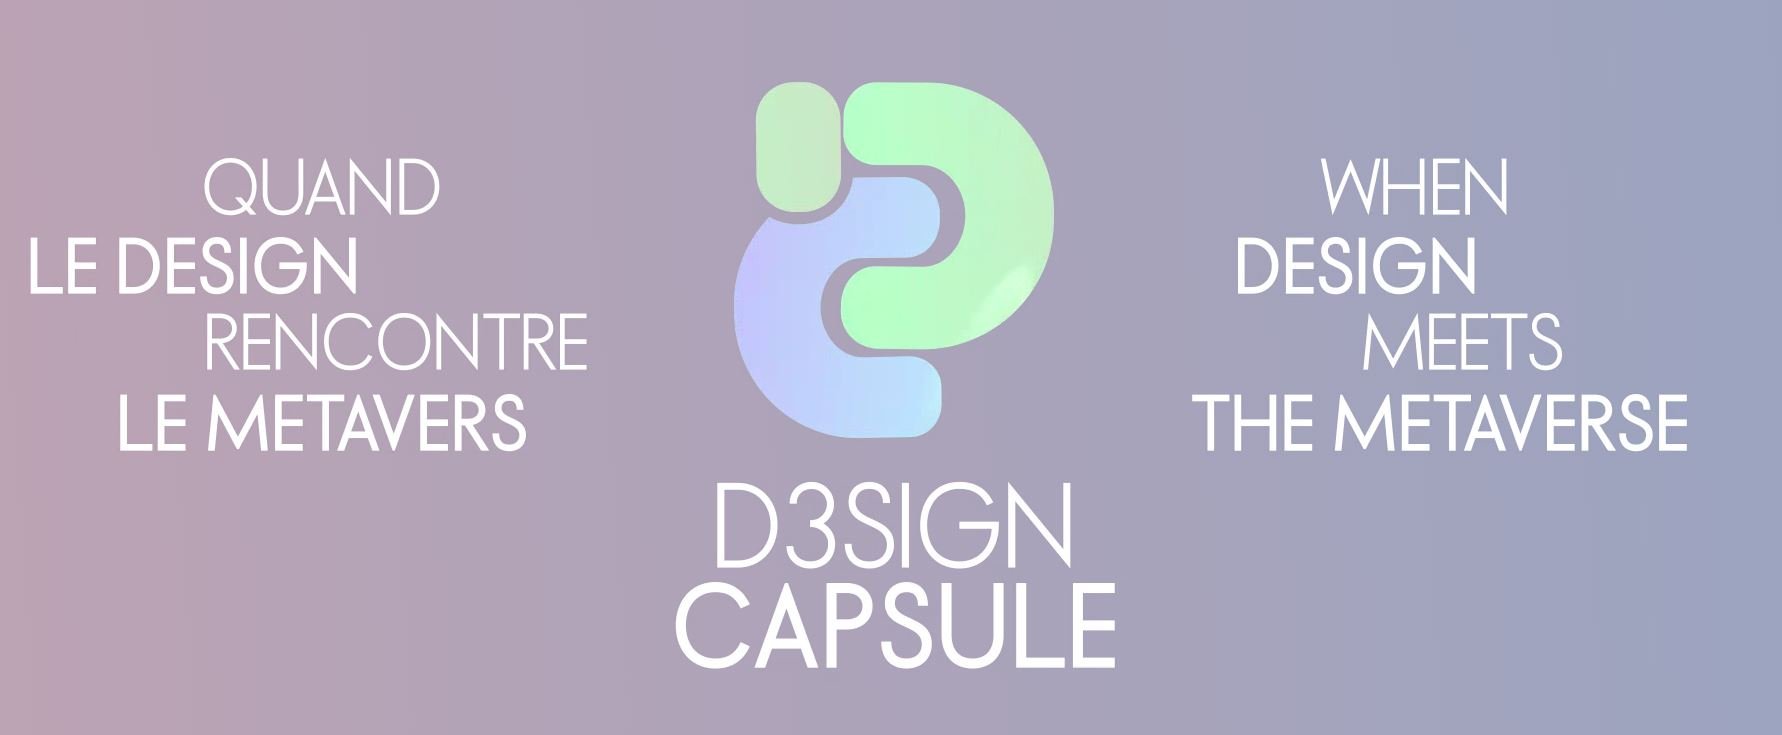 Logotipo para ELLE Décoration France y D3SIGN CAPSULE de SuperRare